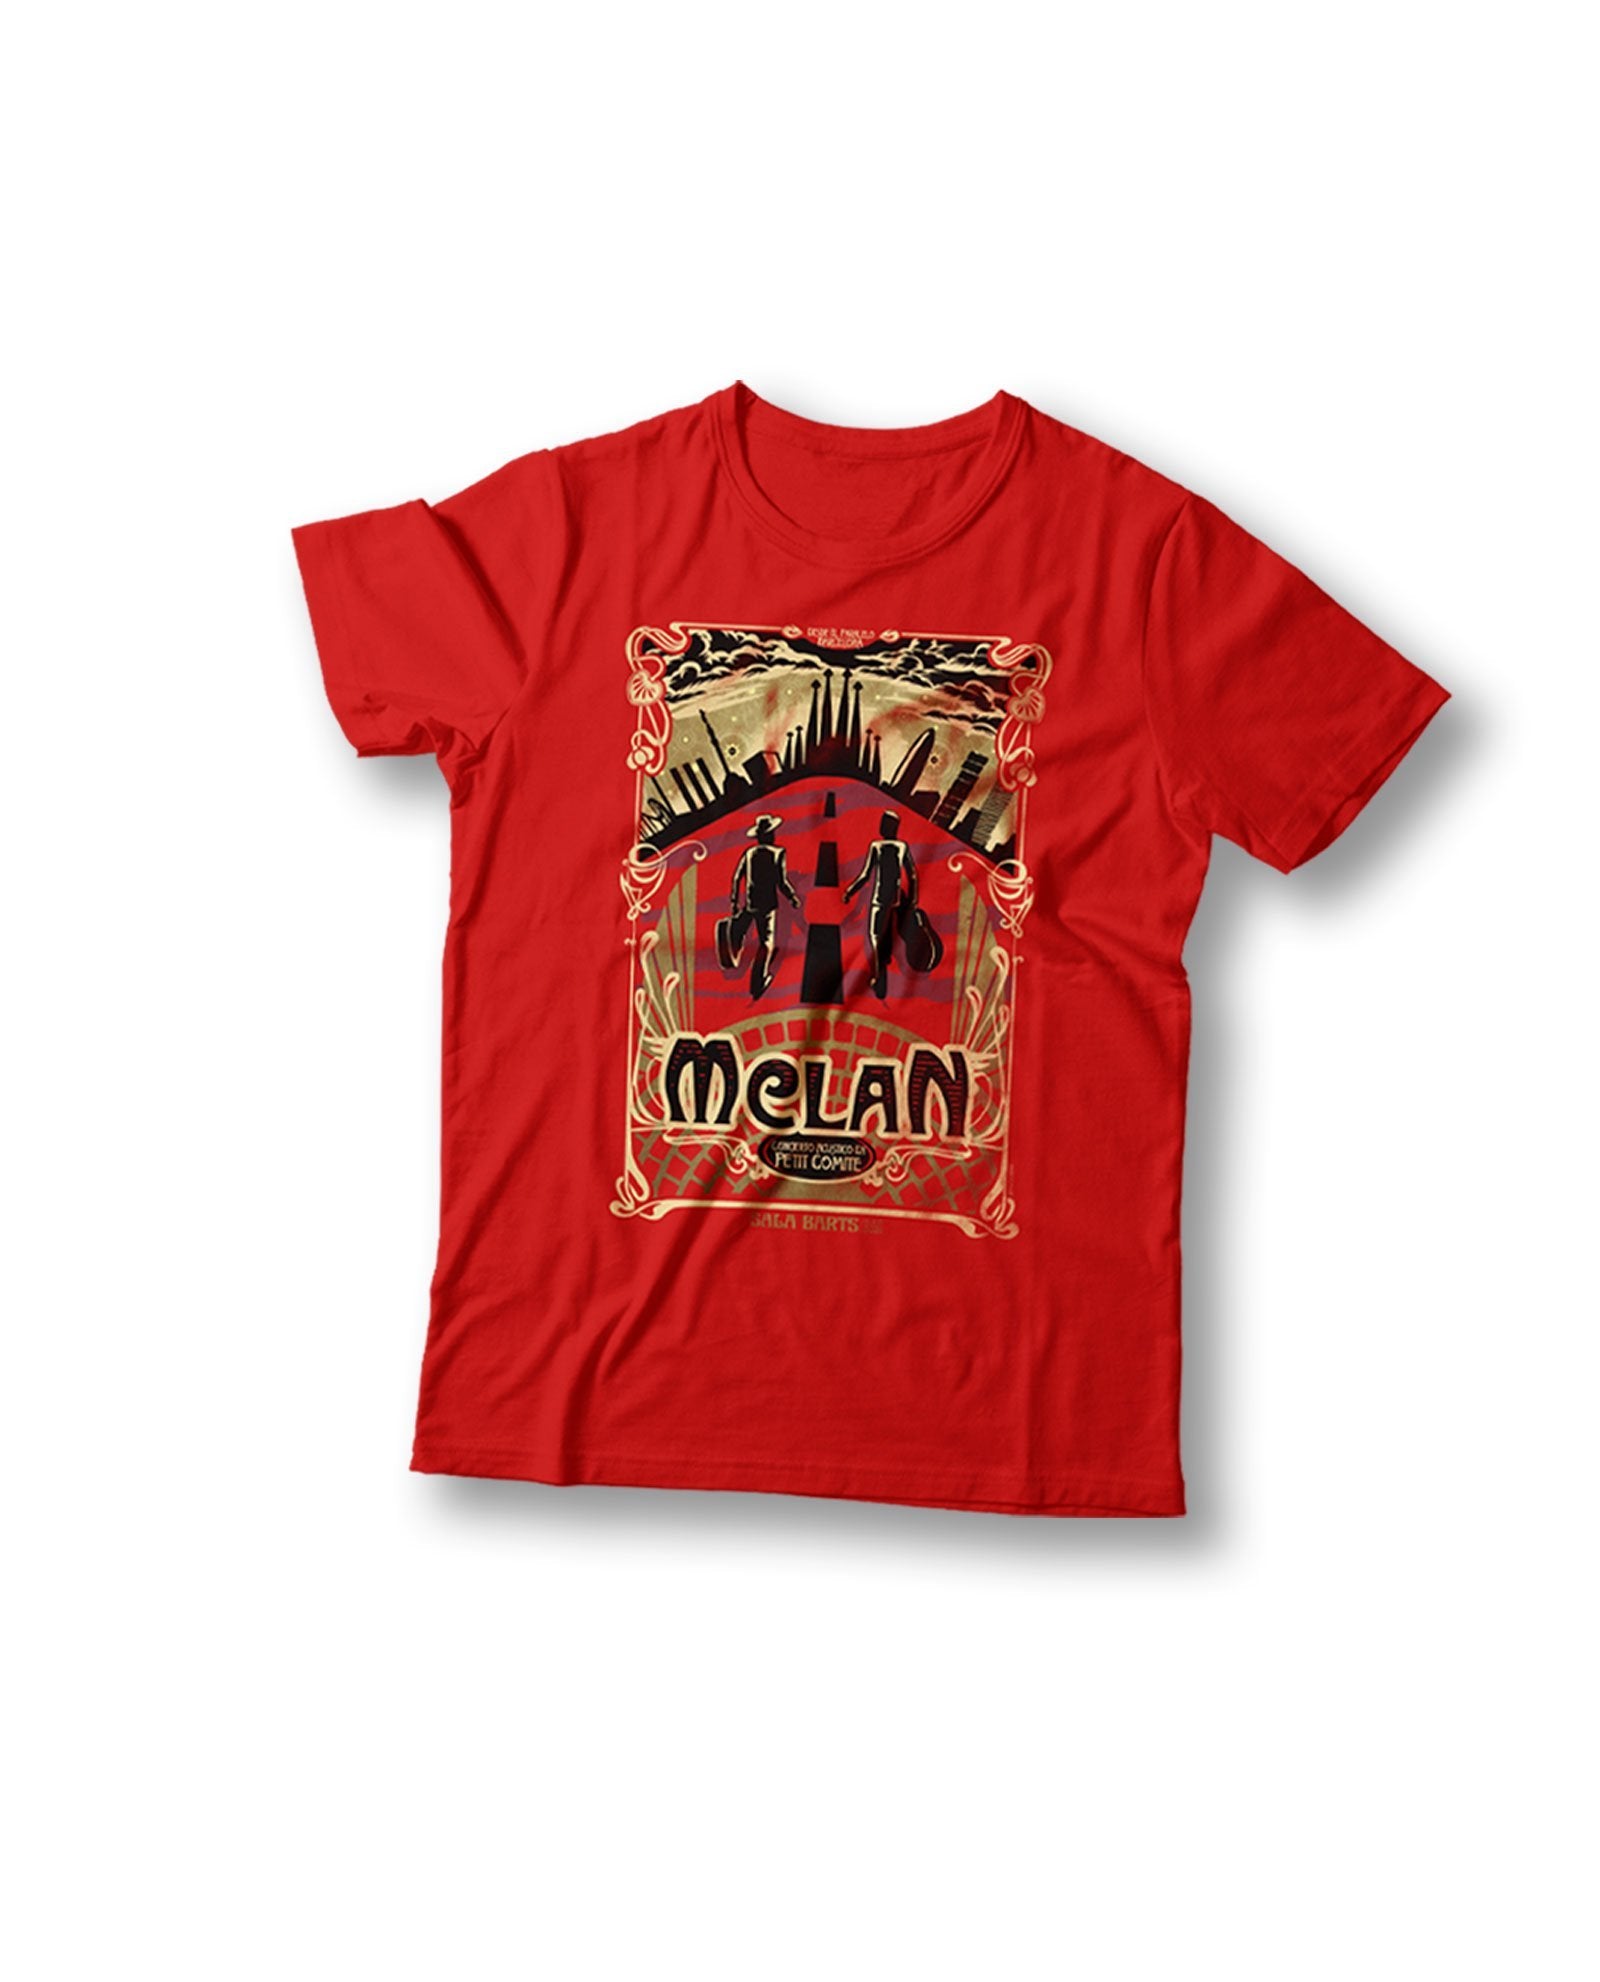 Camiseta Edición Especial "Concierto Acústico En Petit Comité" (Color Rojo) - M CLAN - Rocktud - m-clan